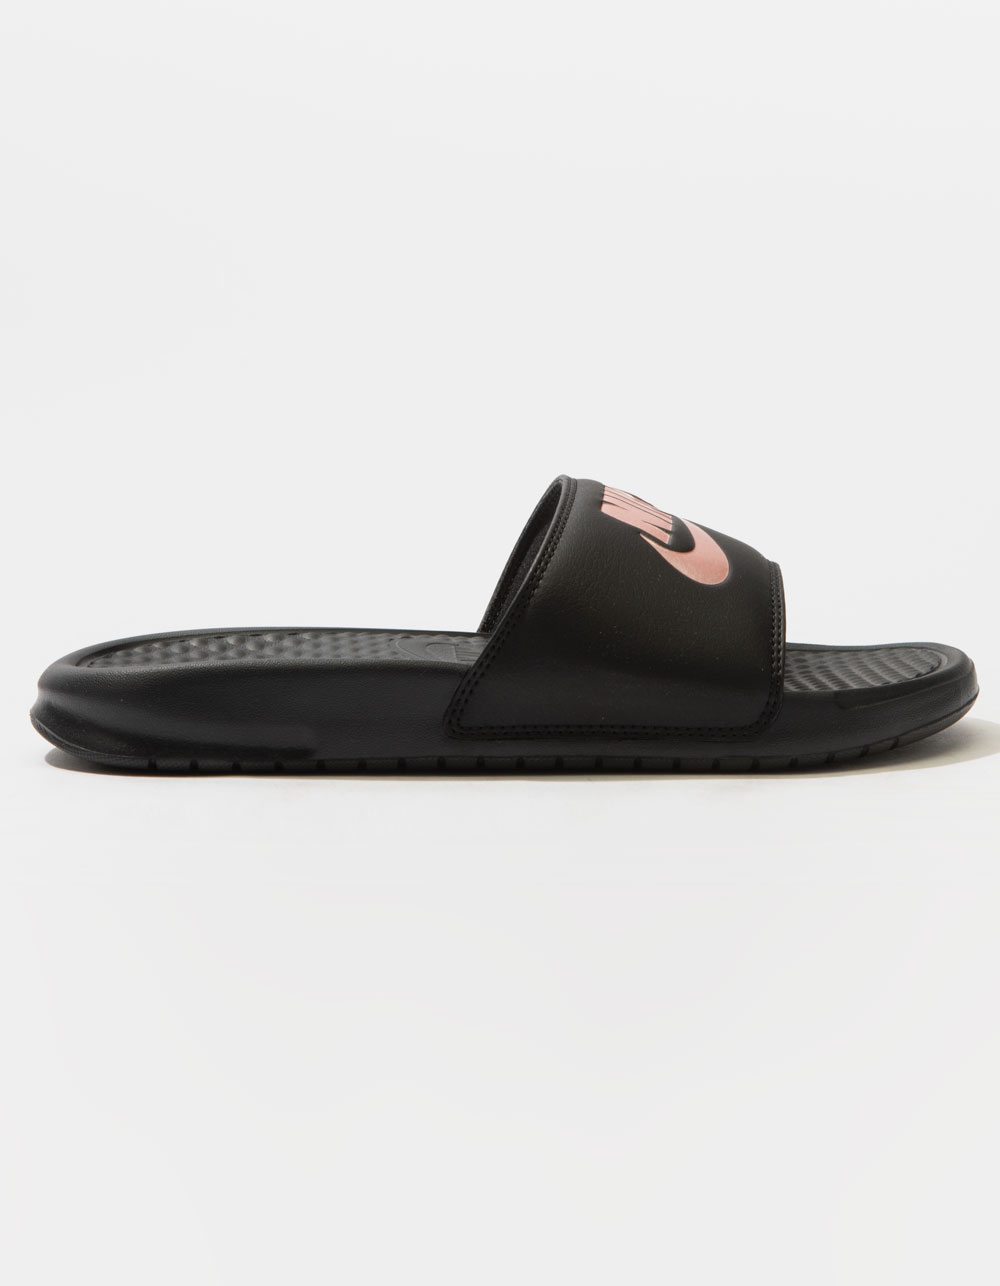 NIKE Benassi Womens Slide Sandals BLACK COMBO Tillys